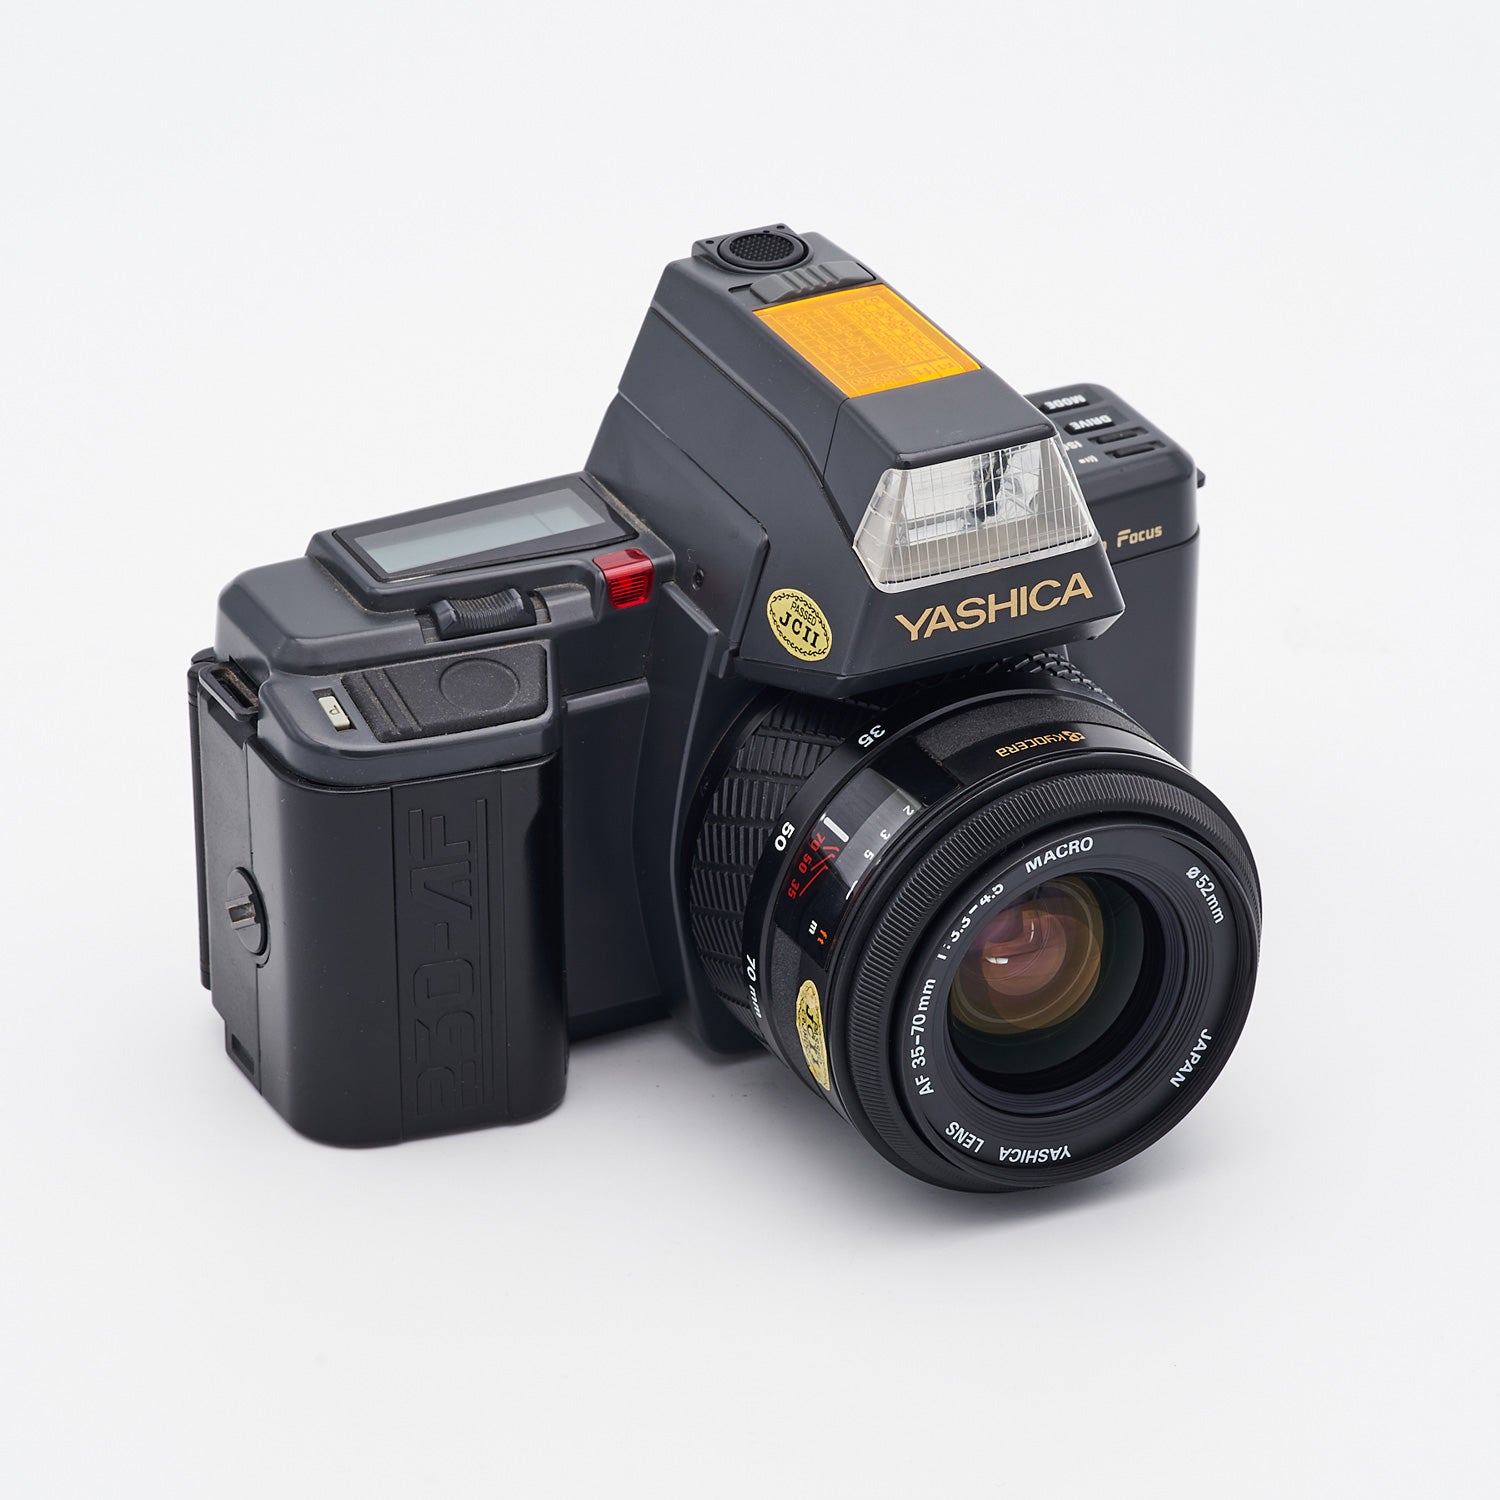 Yashica 230-AF (S/N 0129590) Set inkl. Yashica Lens AF Macro 3.3-4.5/35-70mm (S/N F60165571)